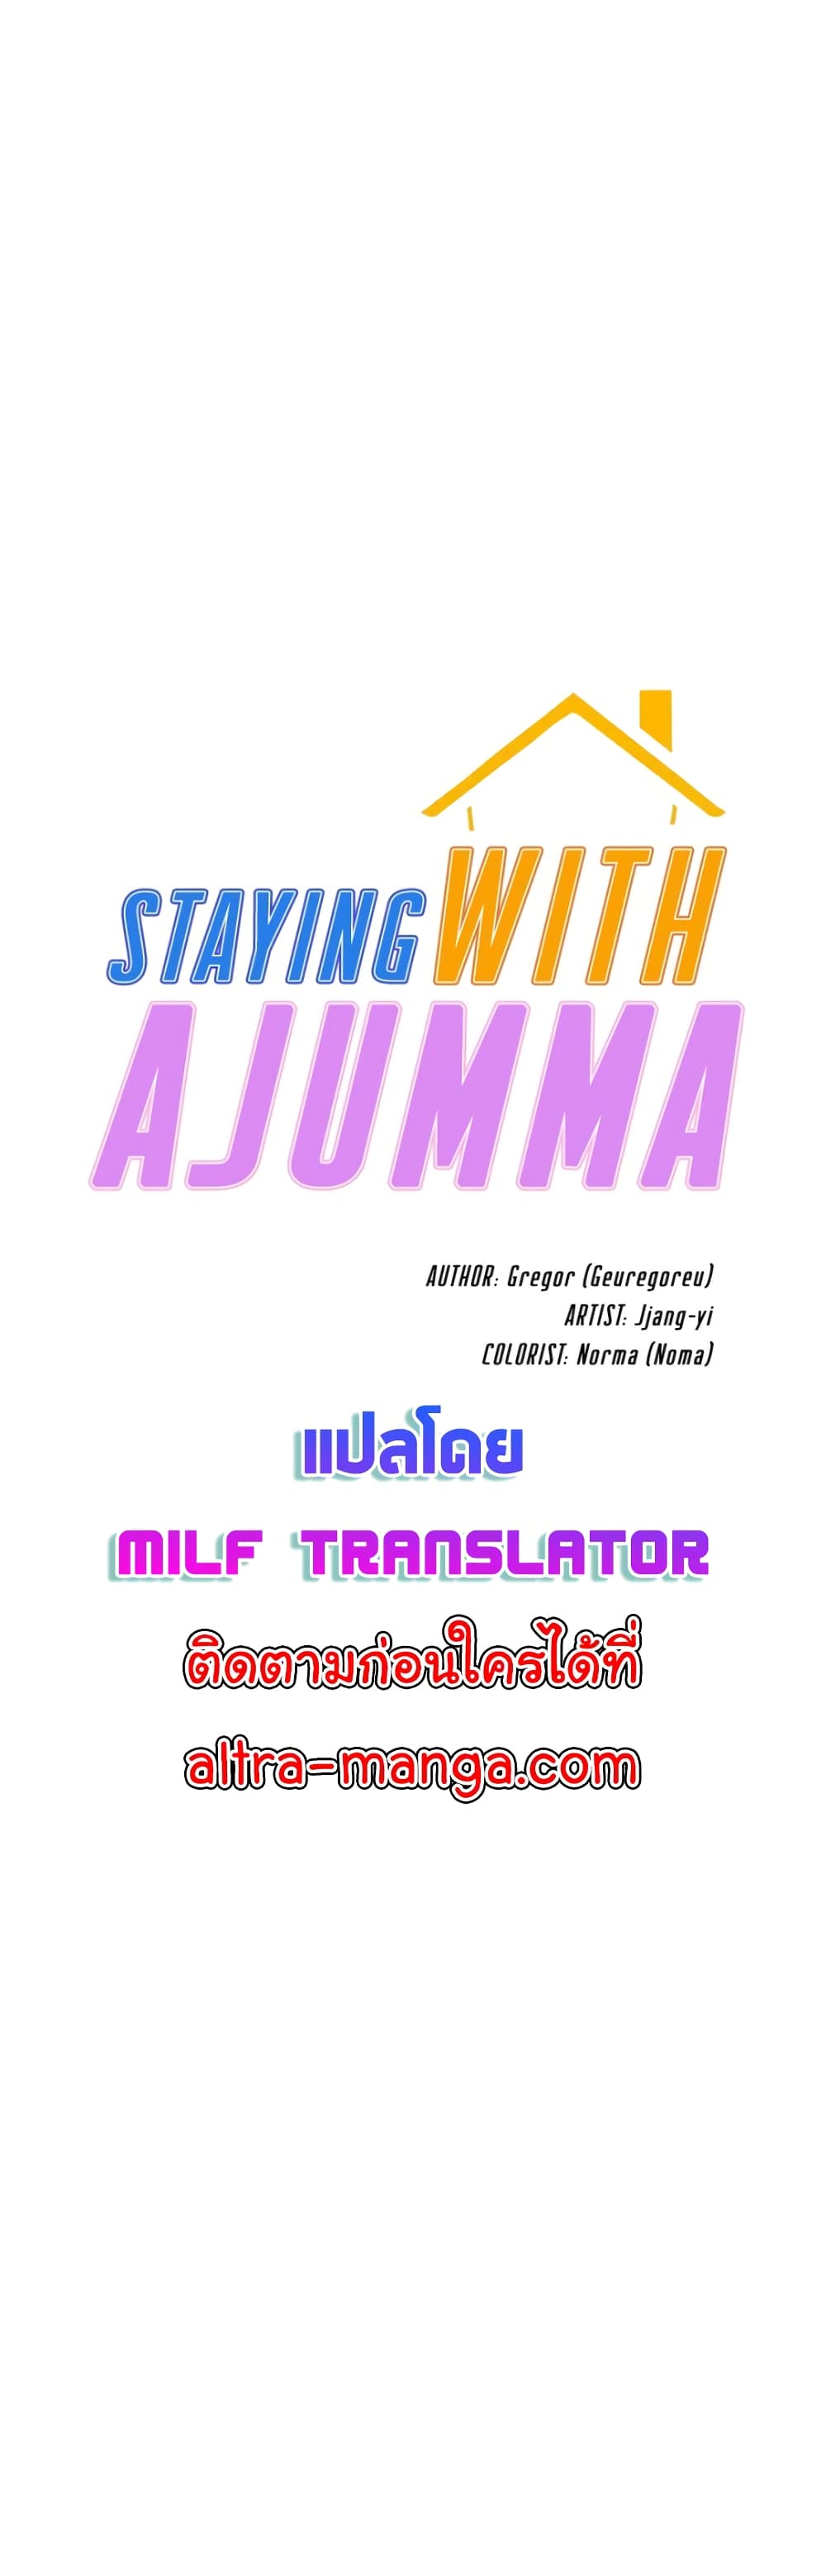 Staying with Ajumma 40-40